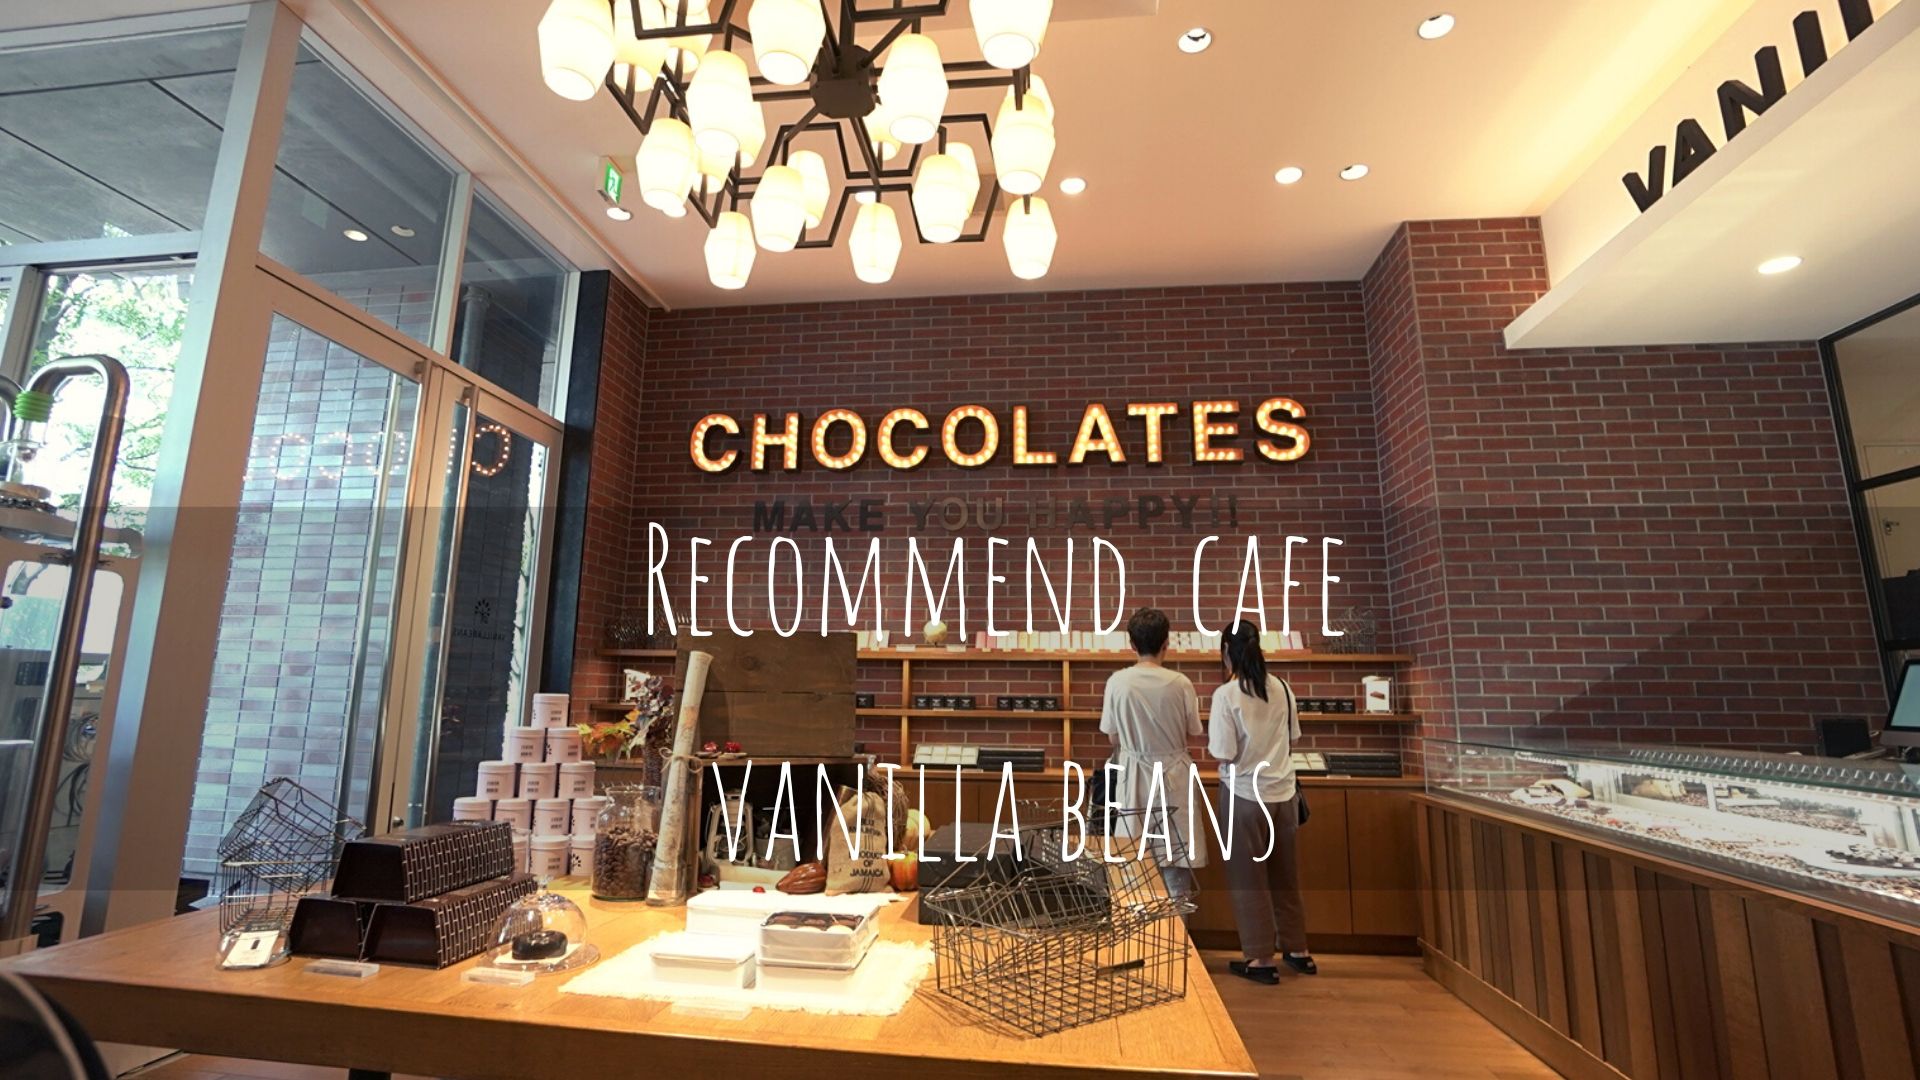 【横浜を一望できるcafe】<br>Vanilla beans【横浜ハンマーヘッド】